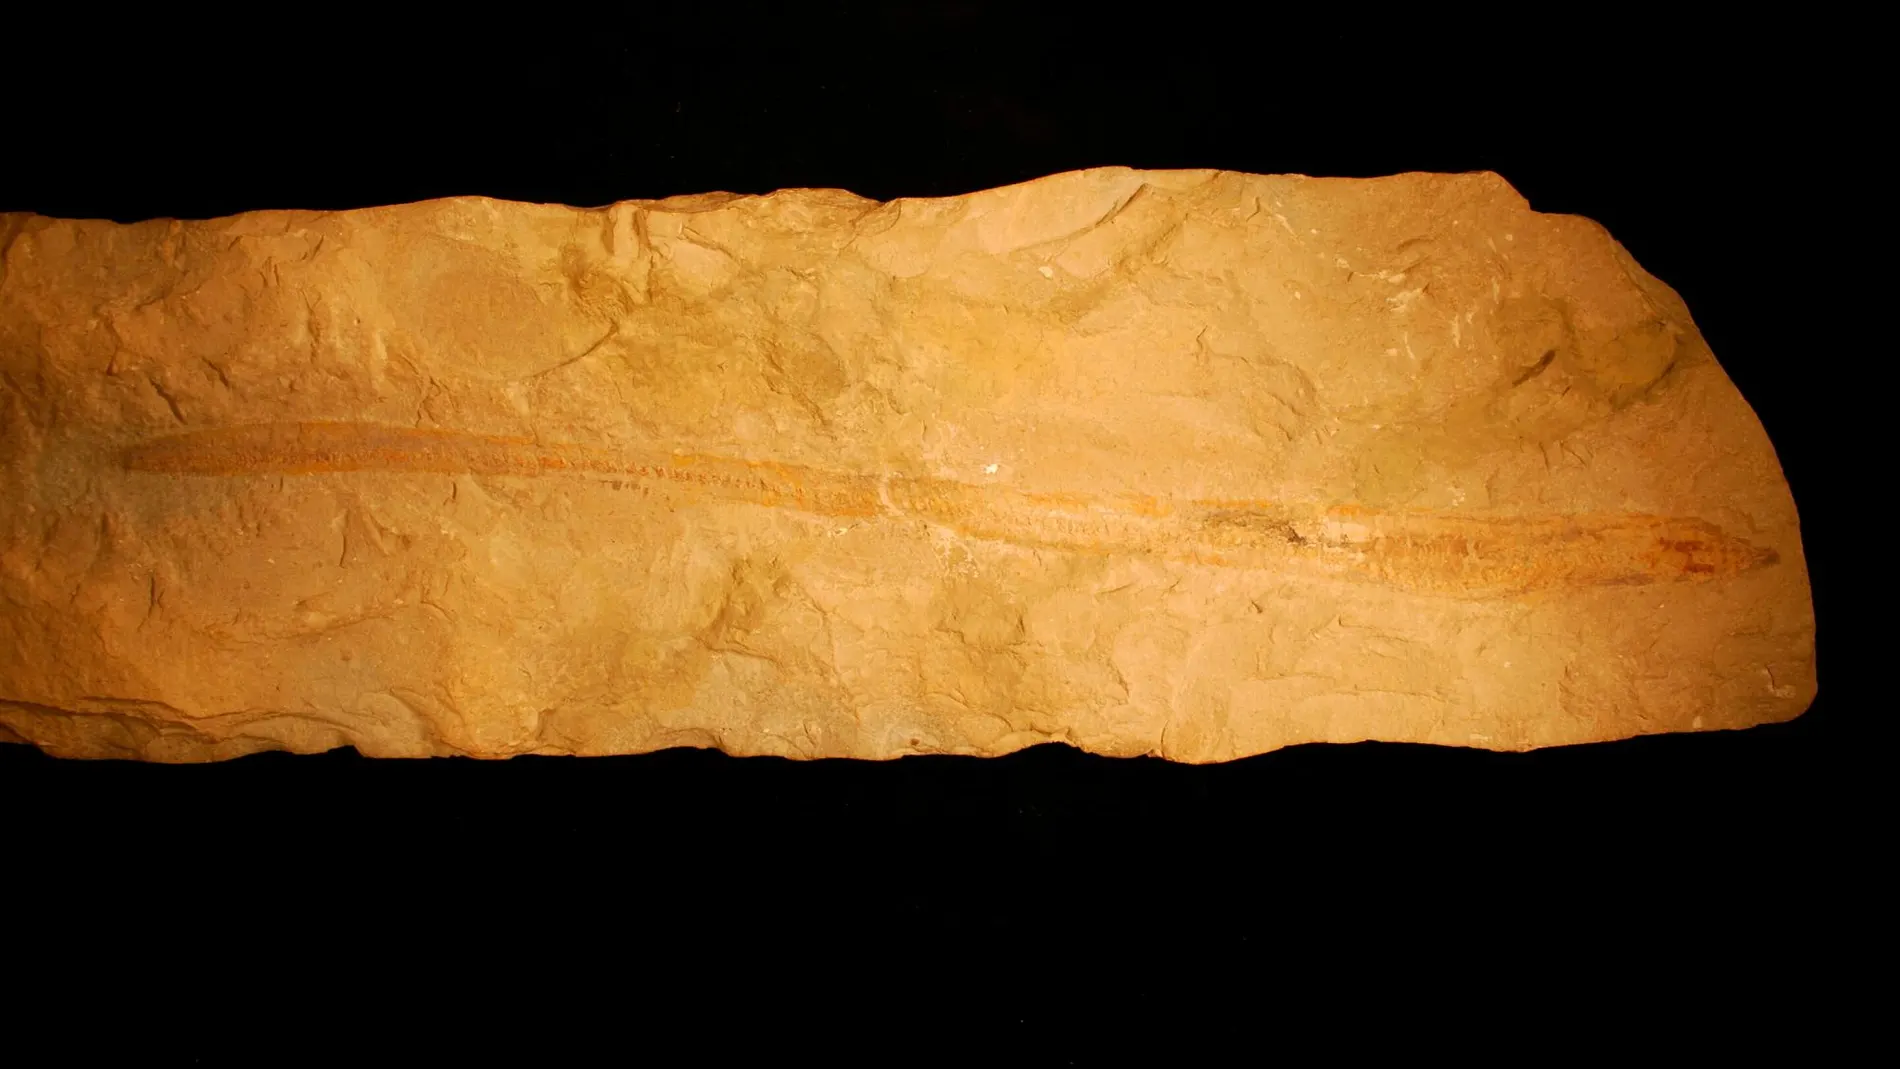 El fósil es un pez de 12 pulgadas de largo incrustado en una losa de piedra caliza del periodo Cretácico en el Líbano / Phys.org